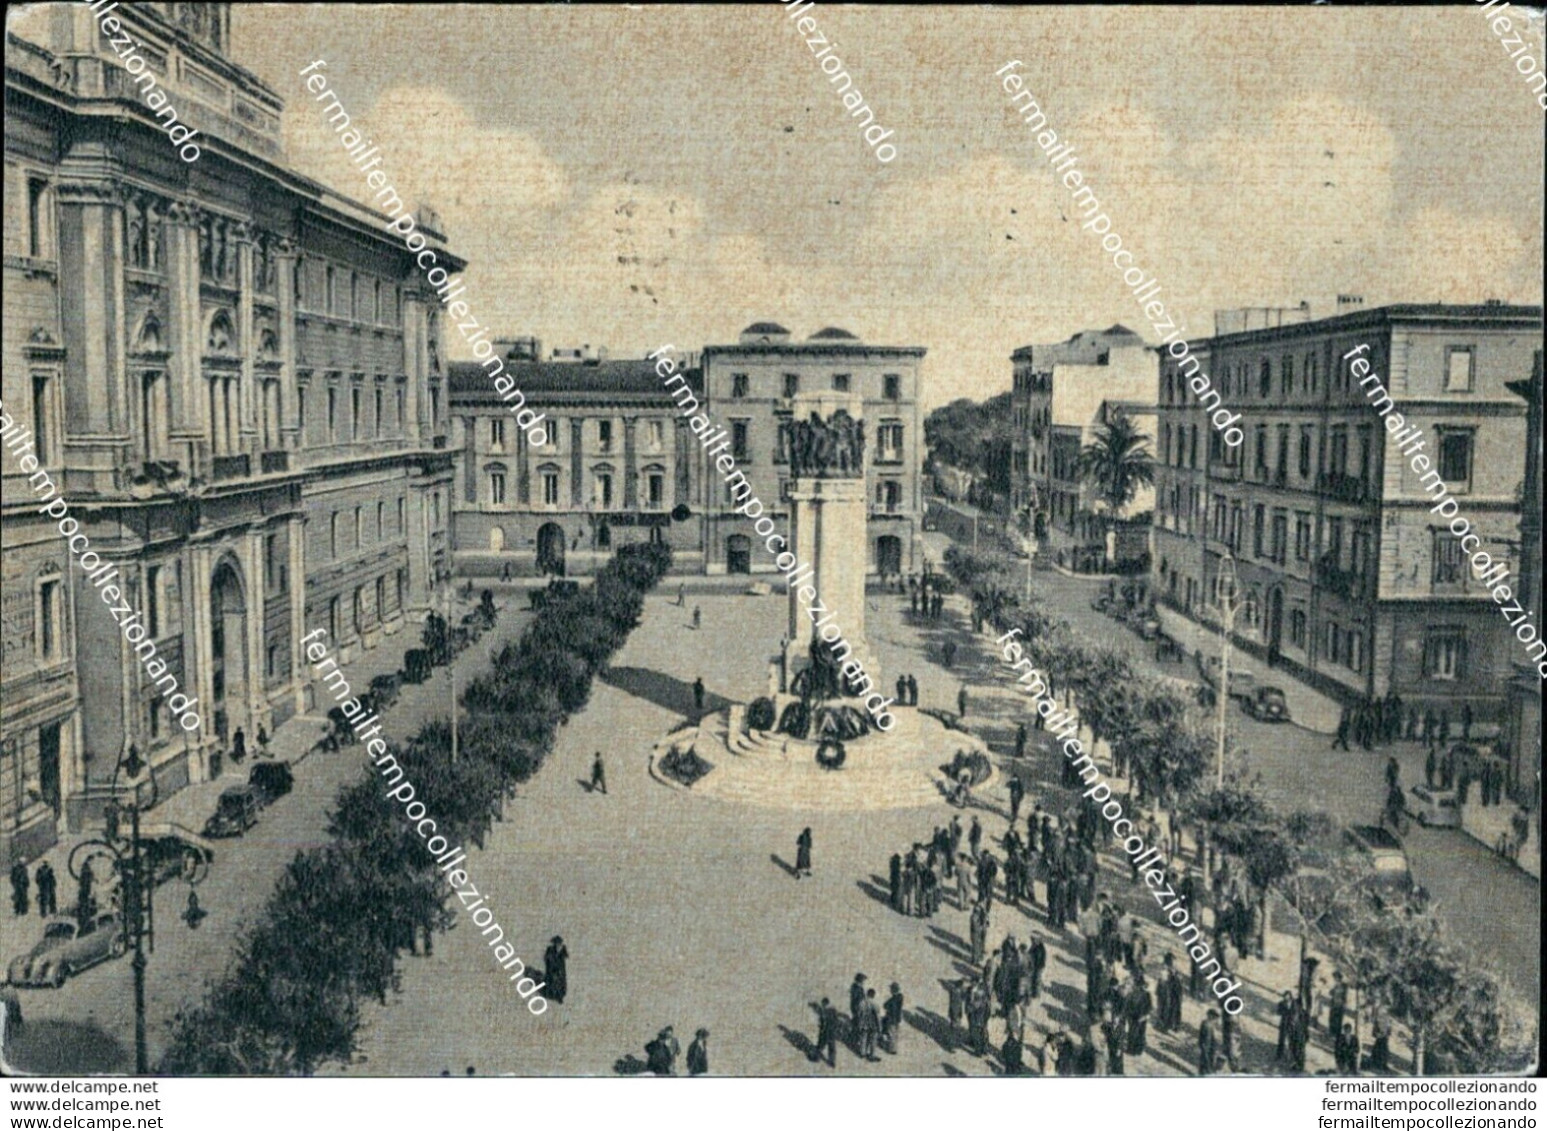 At738 Cartolina Taranto Citta' Piazza Della Vittoria E Monumentoai Caduti Puglia - Taranto